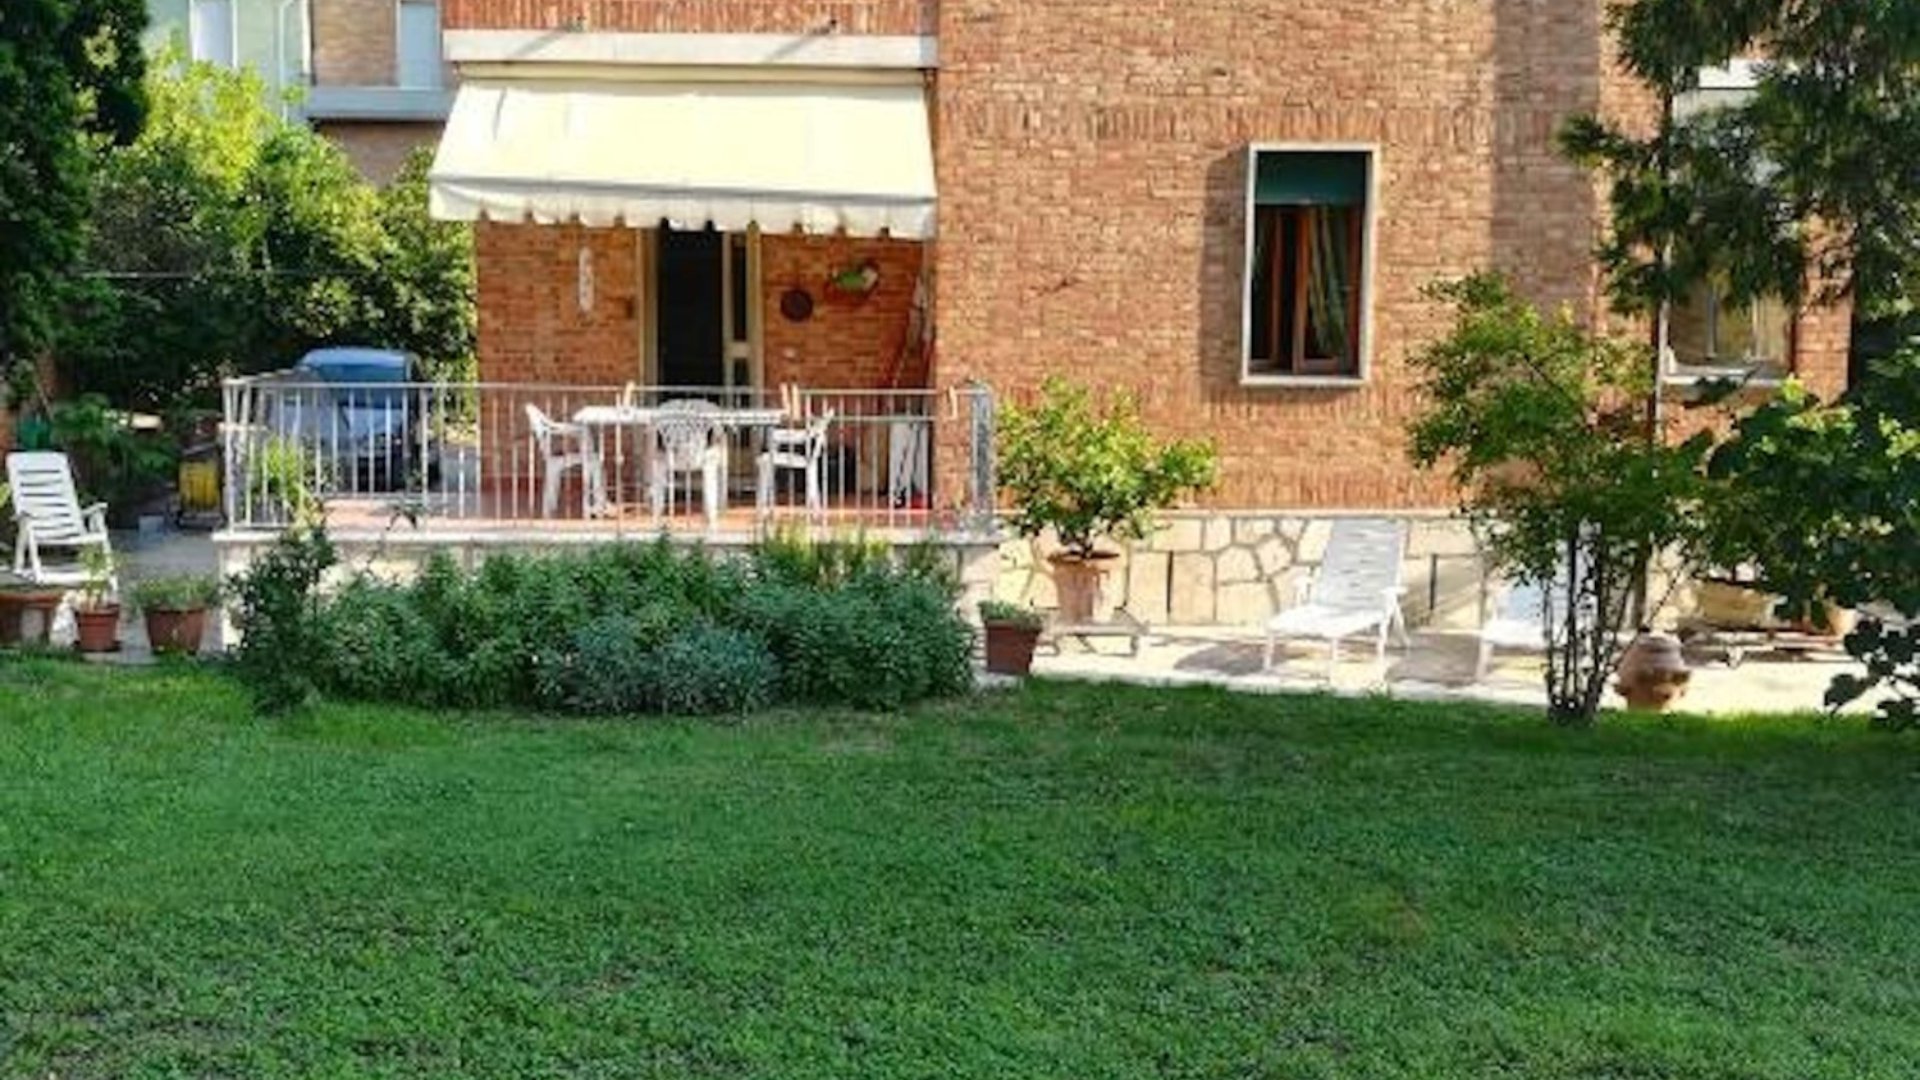 Villa La Pineta ti aspetta per un piacevole weekend tra amici nel cuore della Valdichiana